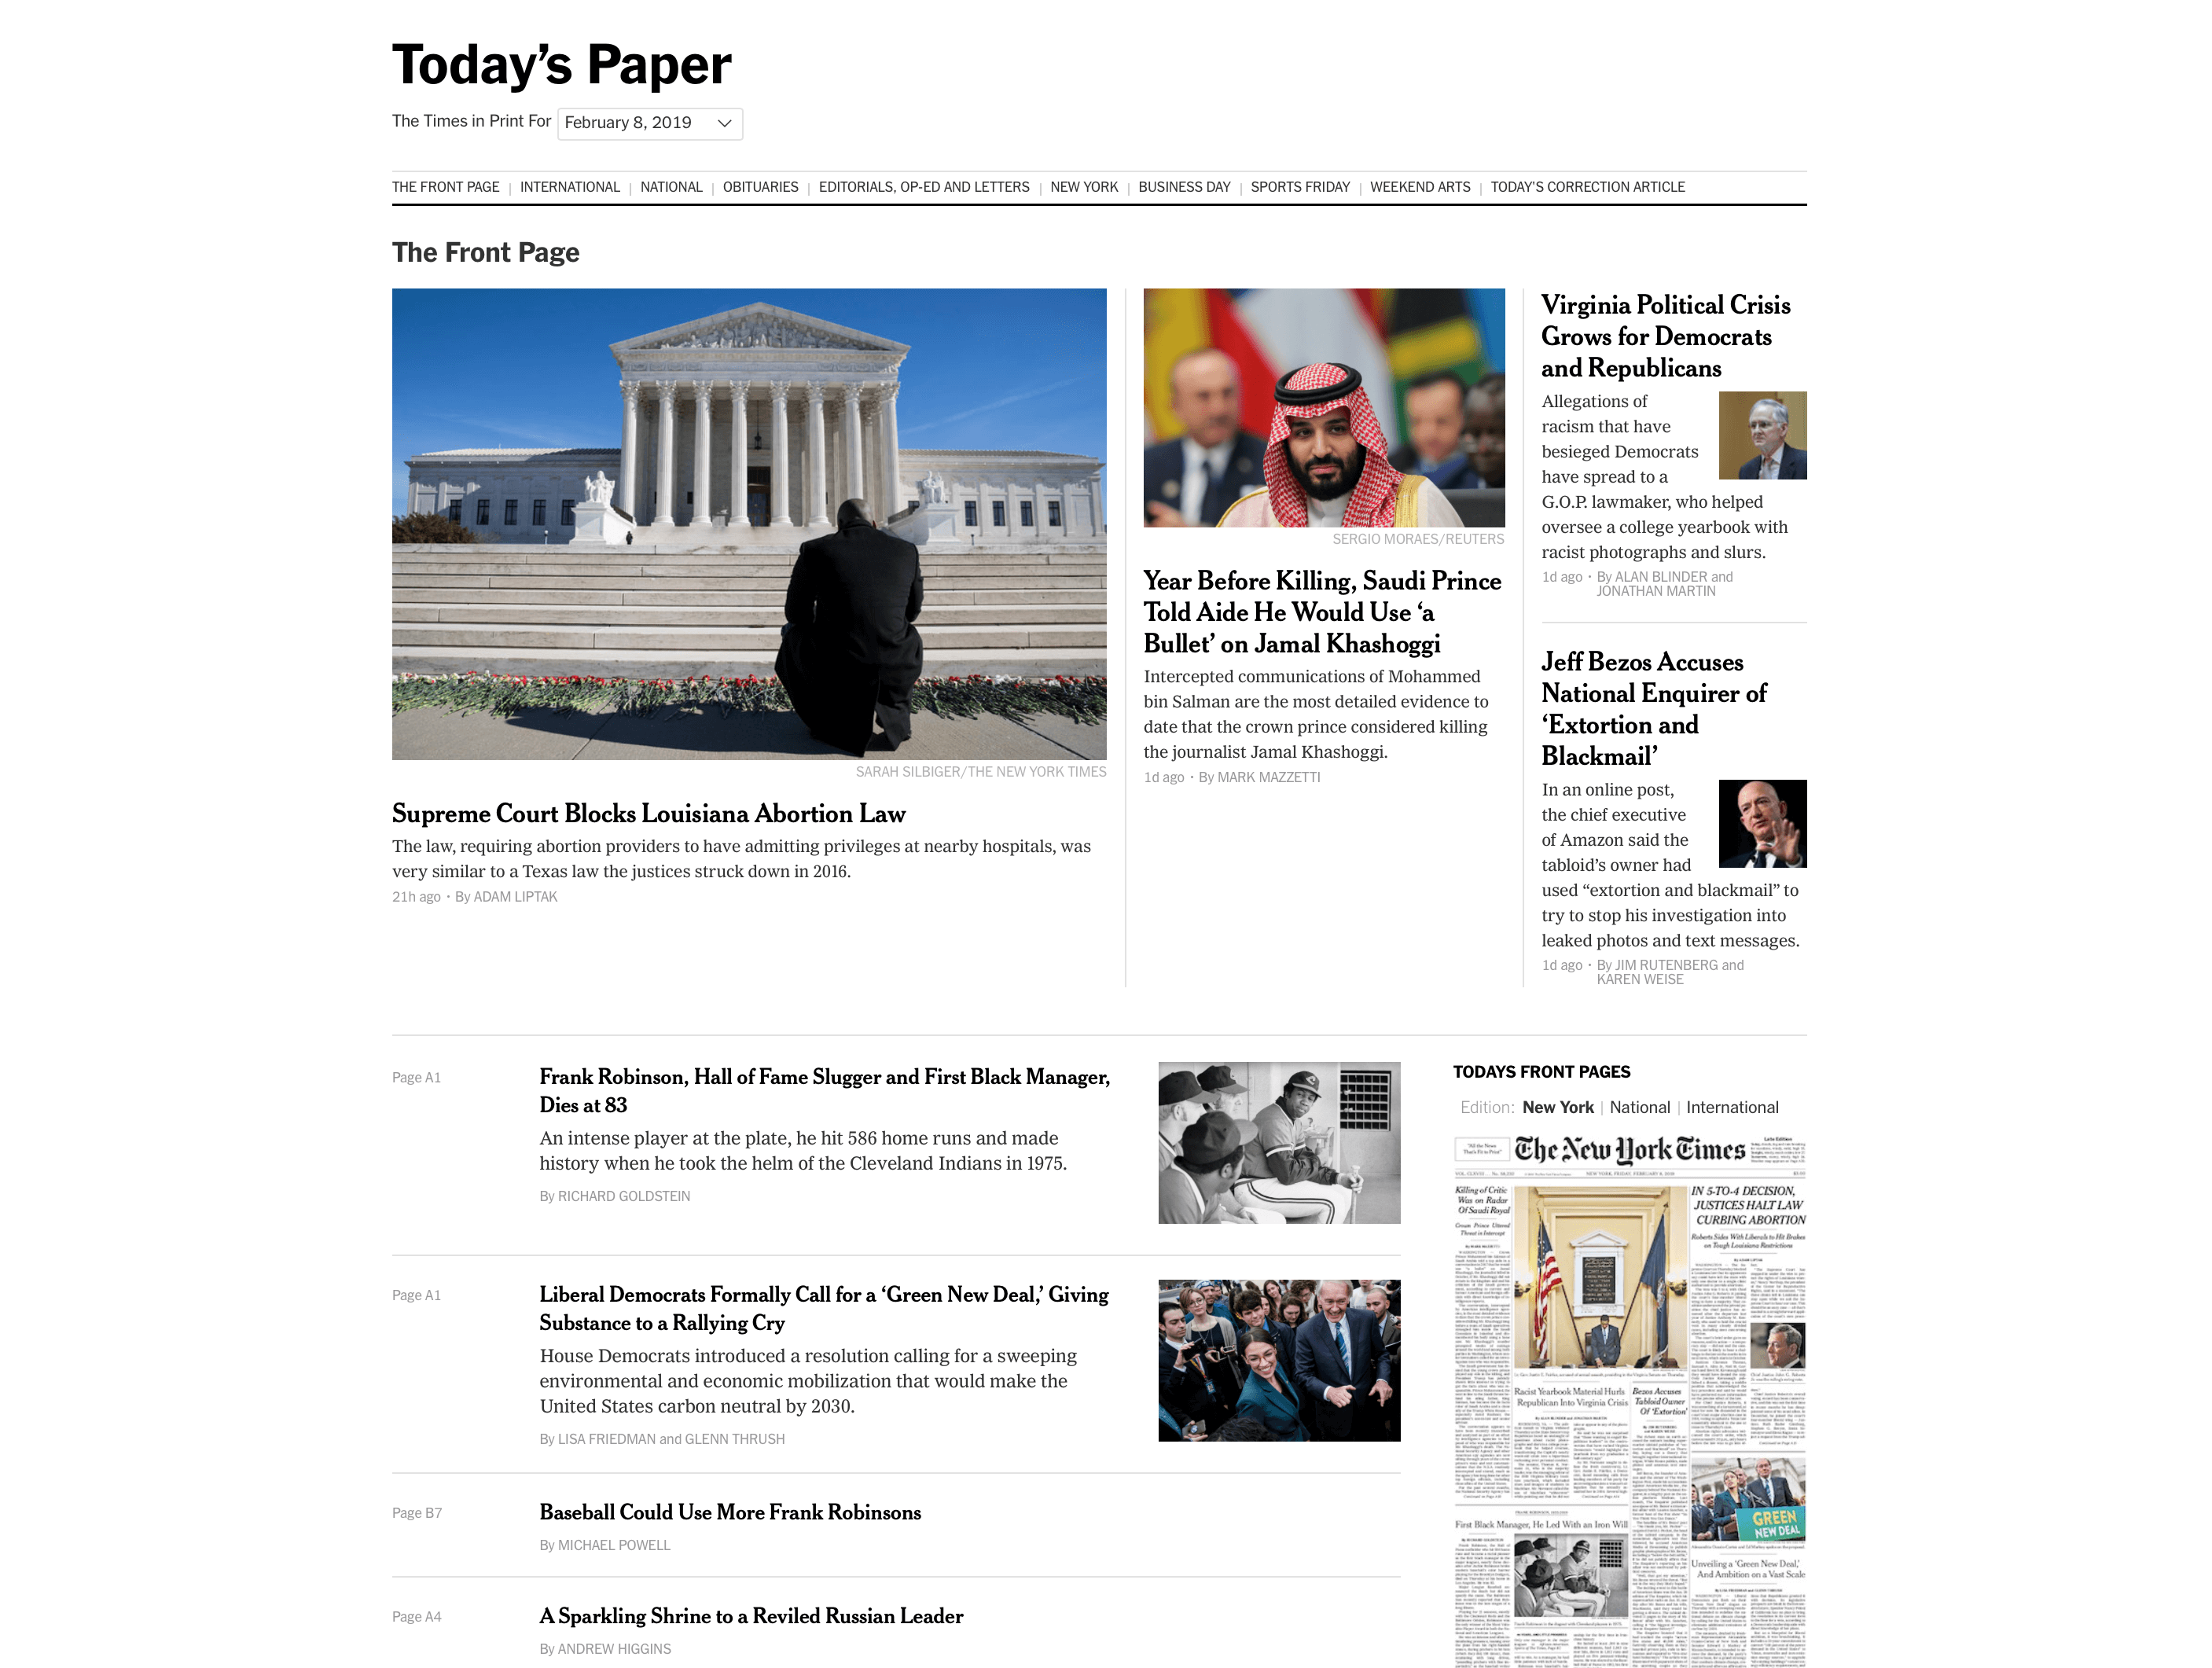 《纽约时报》的「今日报纸」页面